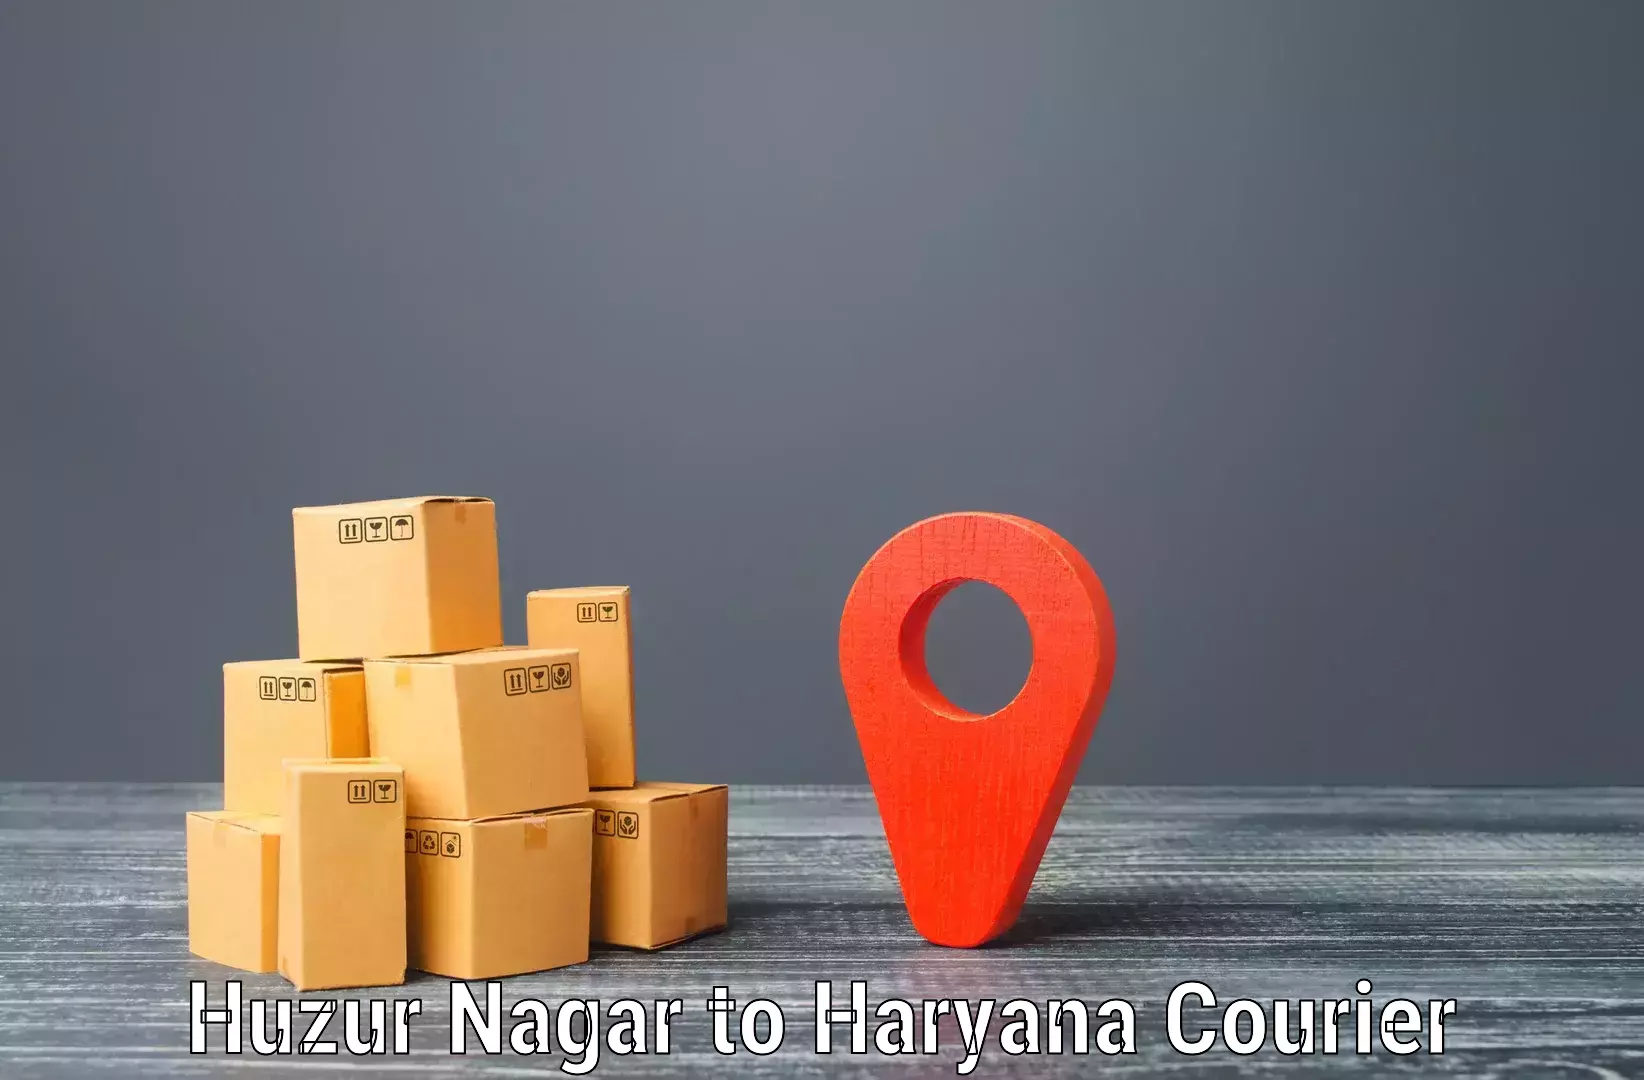 Next-day freight services Huzur Nagar to Rewari